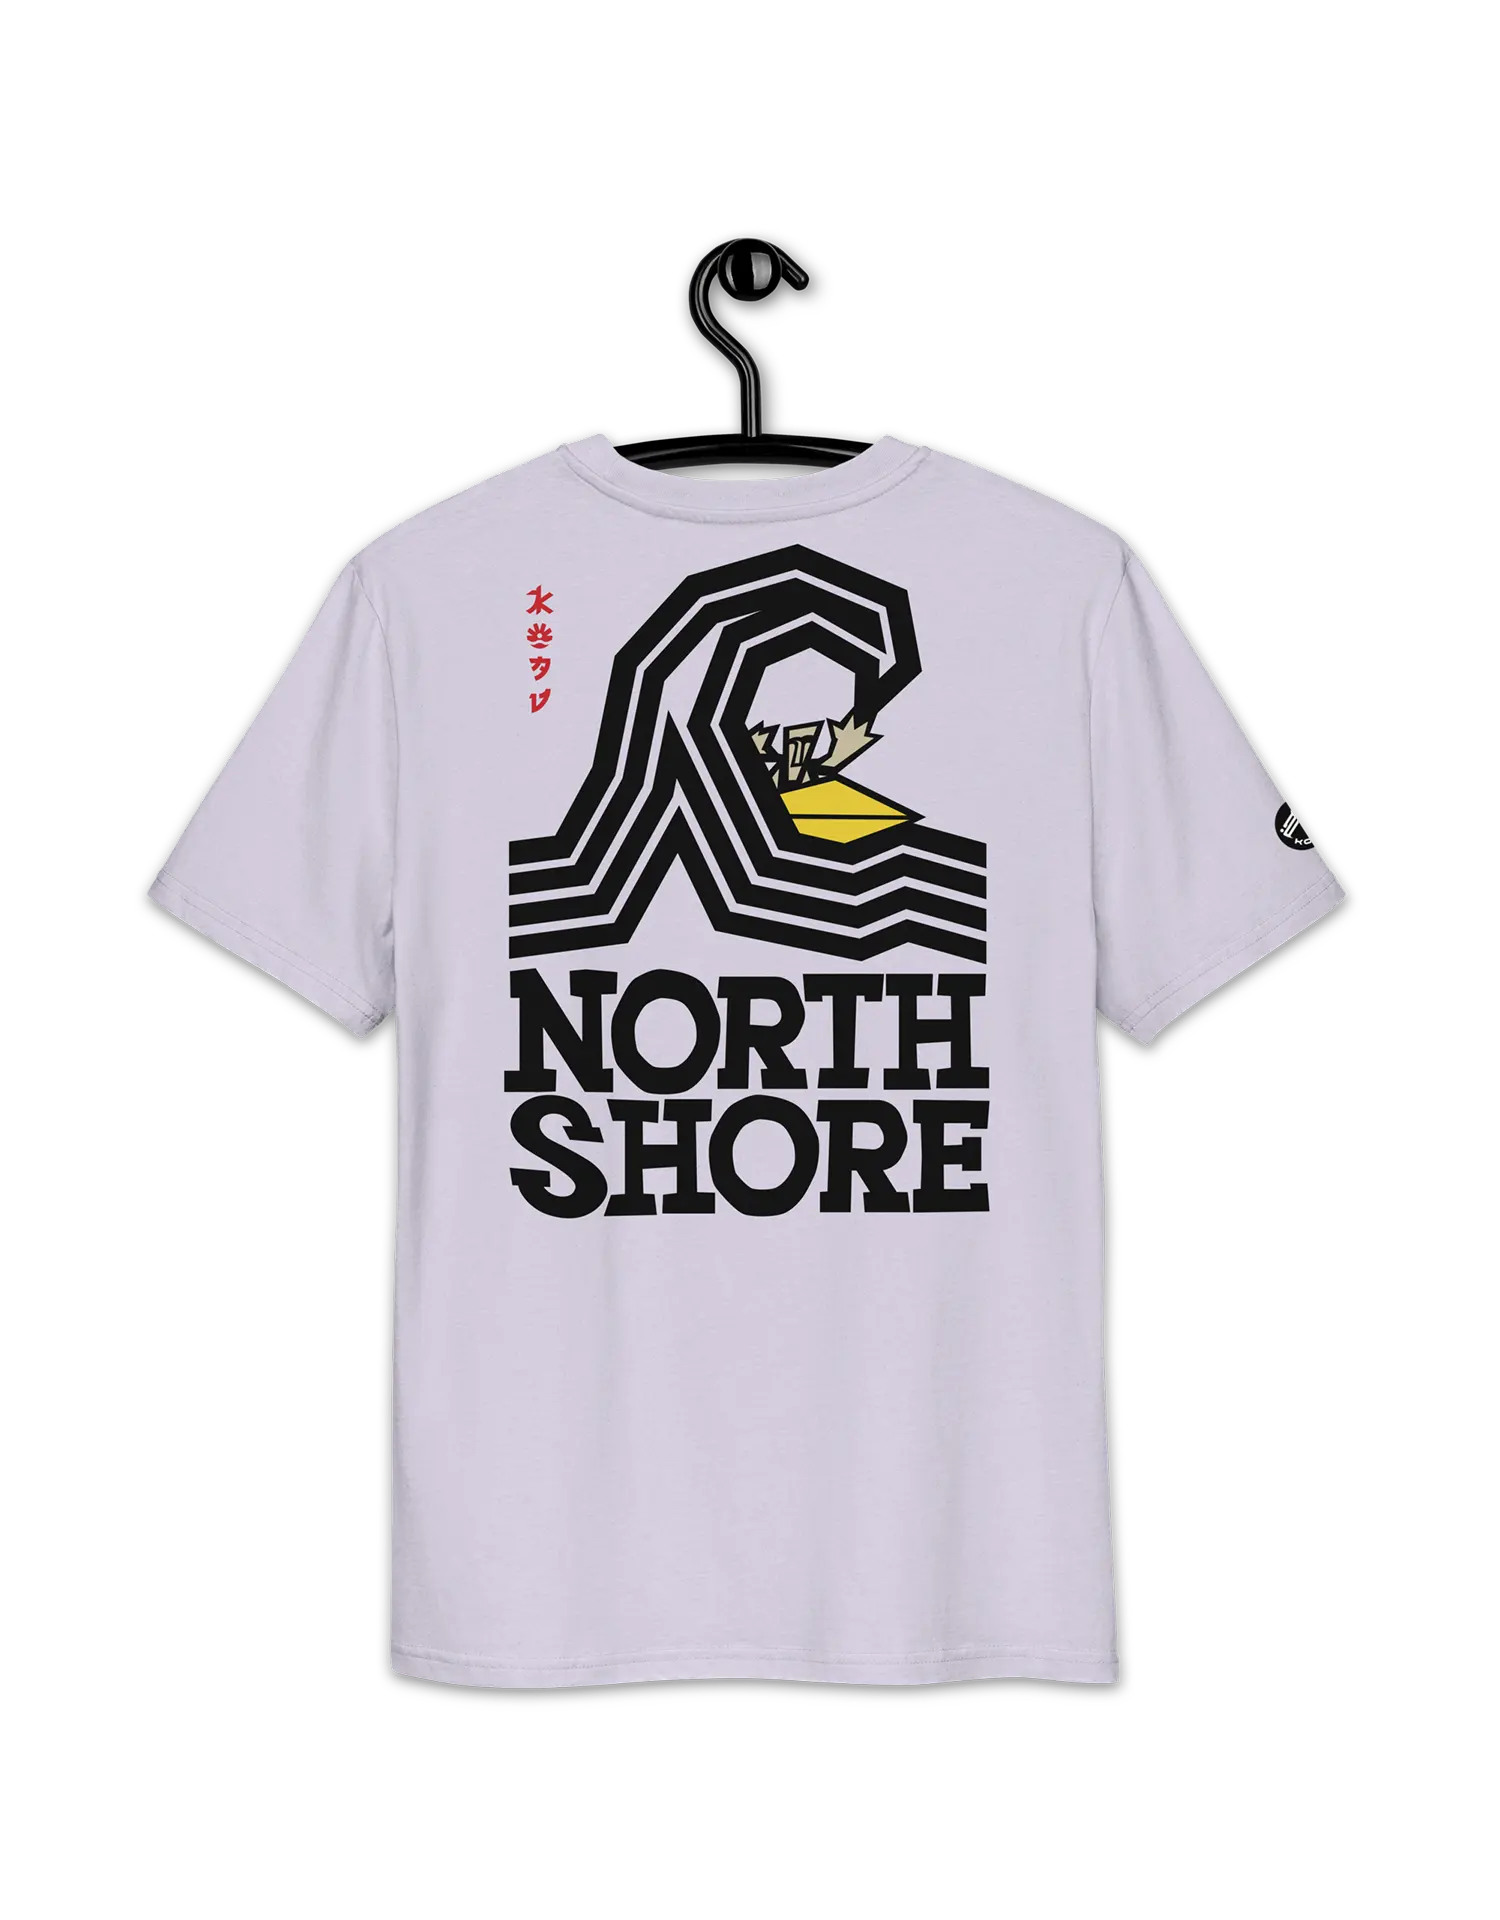 North Shore Surf Lavender Premium Organic Cotton Eco-friendly T-Shirt by KOAV